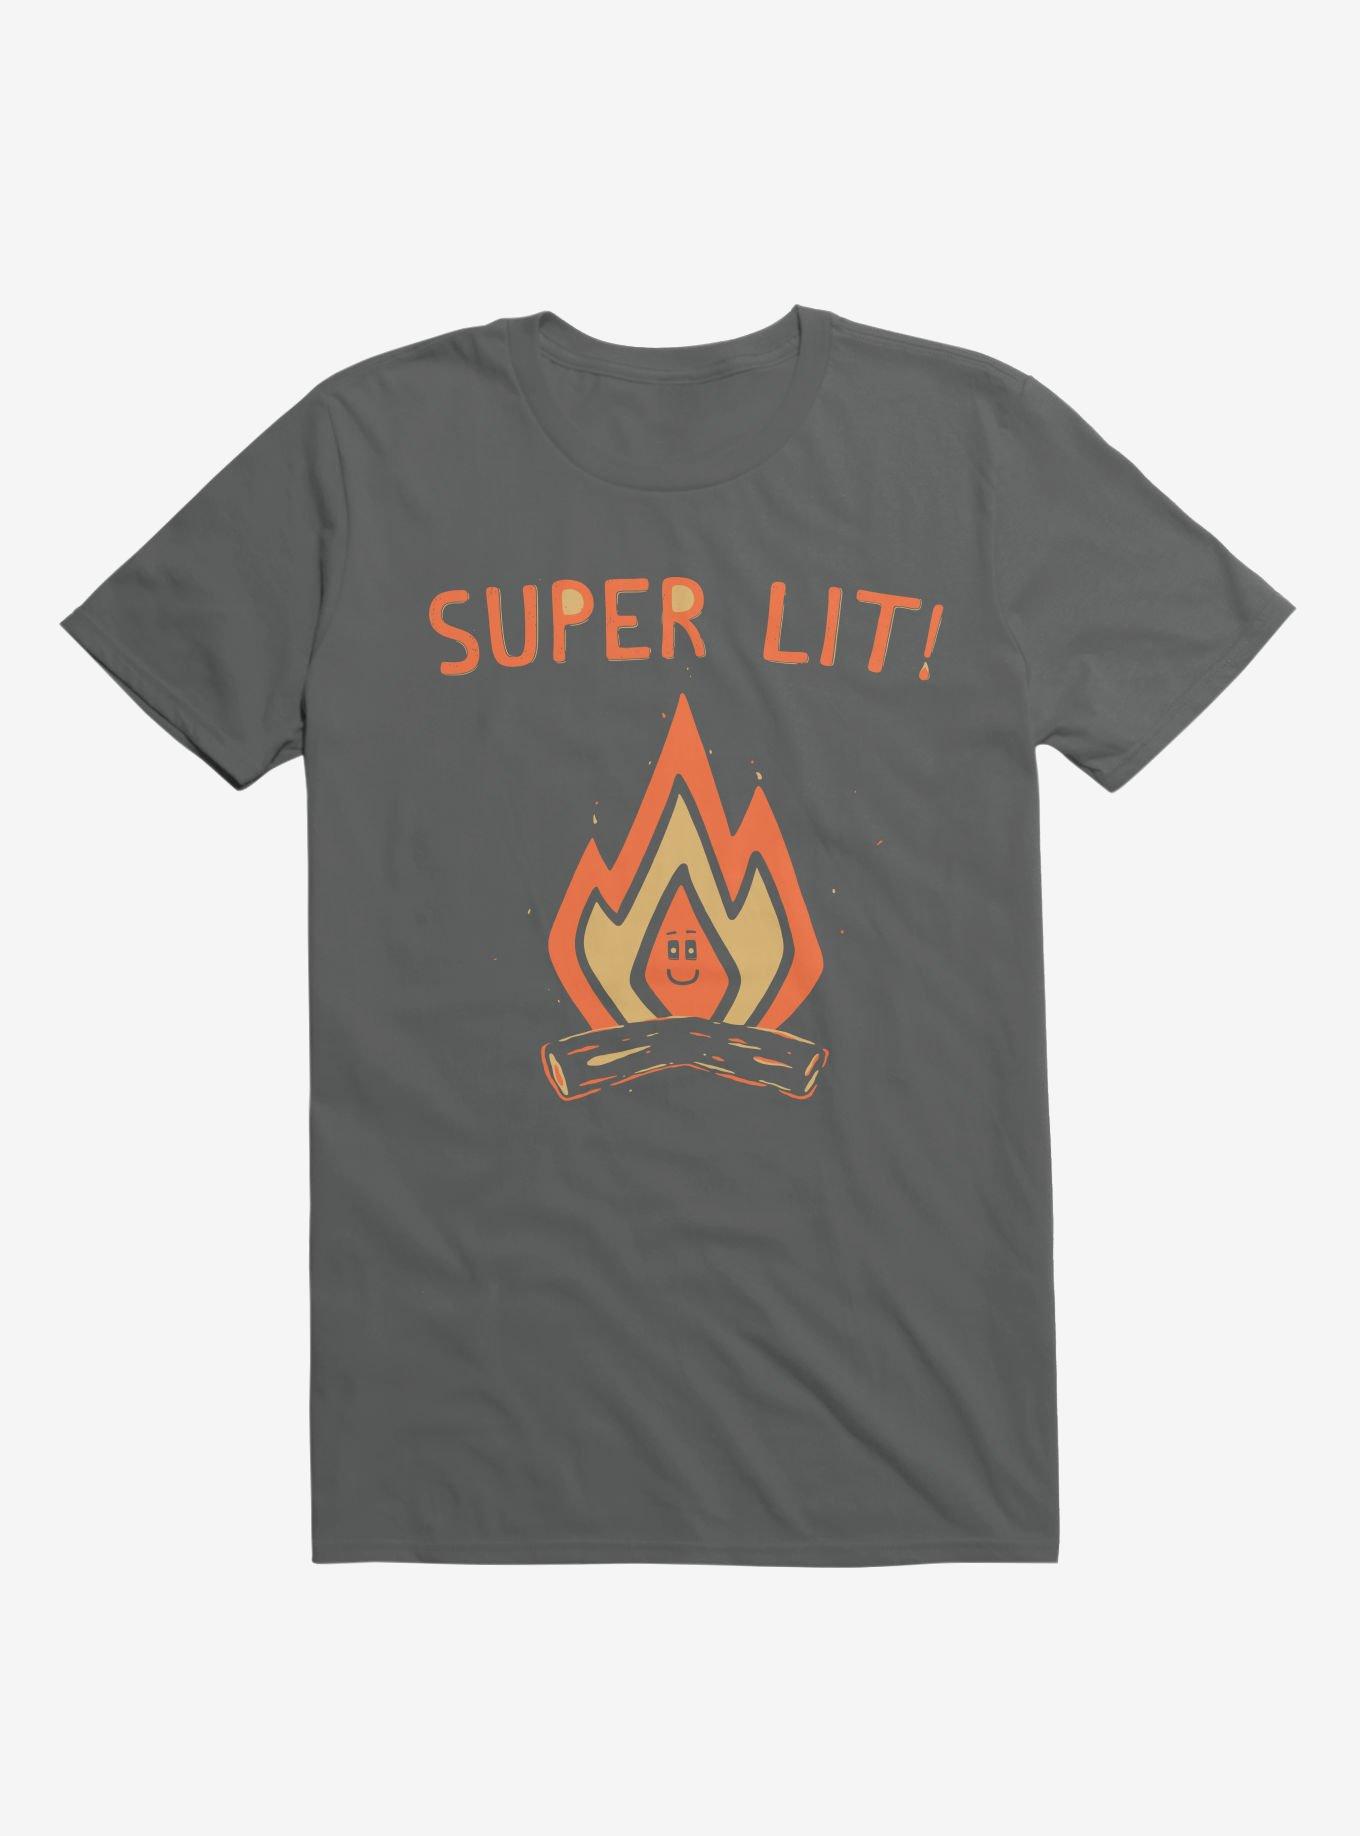 Super Lit! Campfire T-Shirt